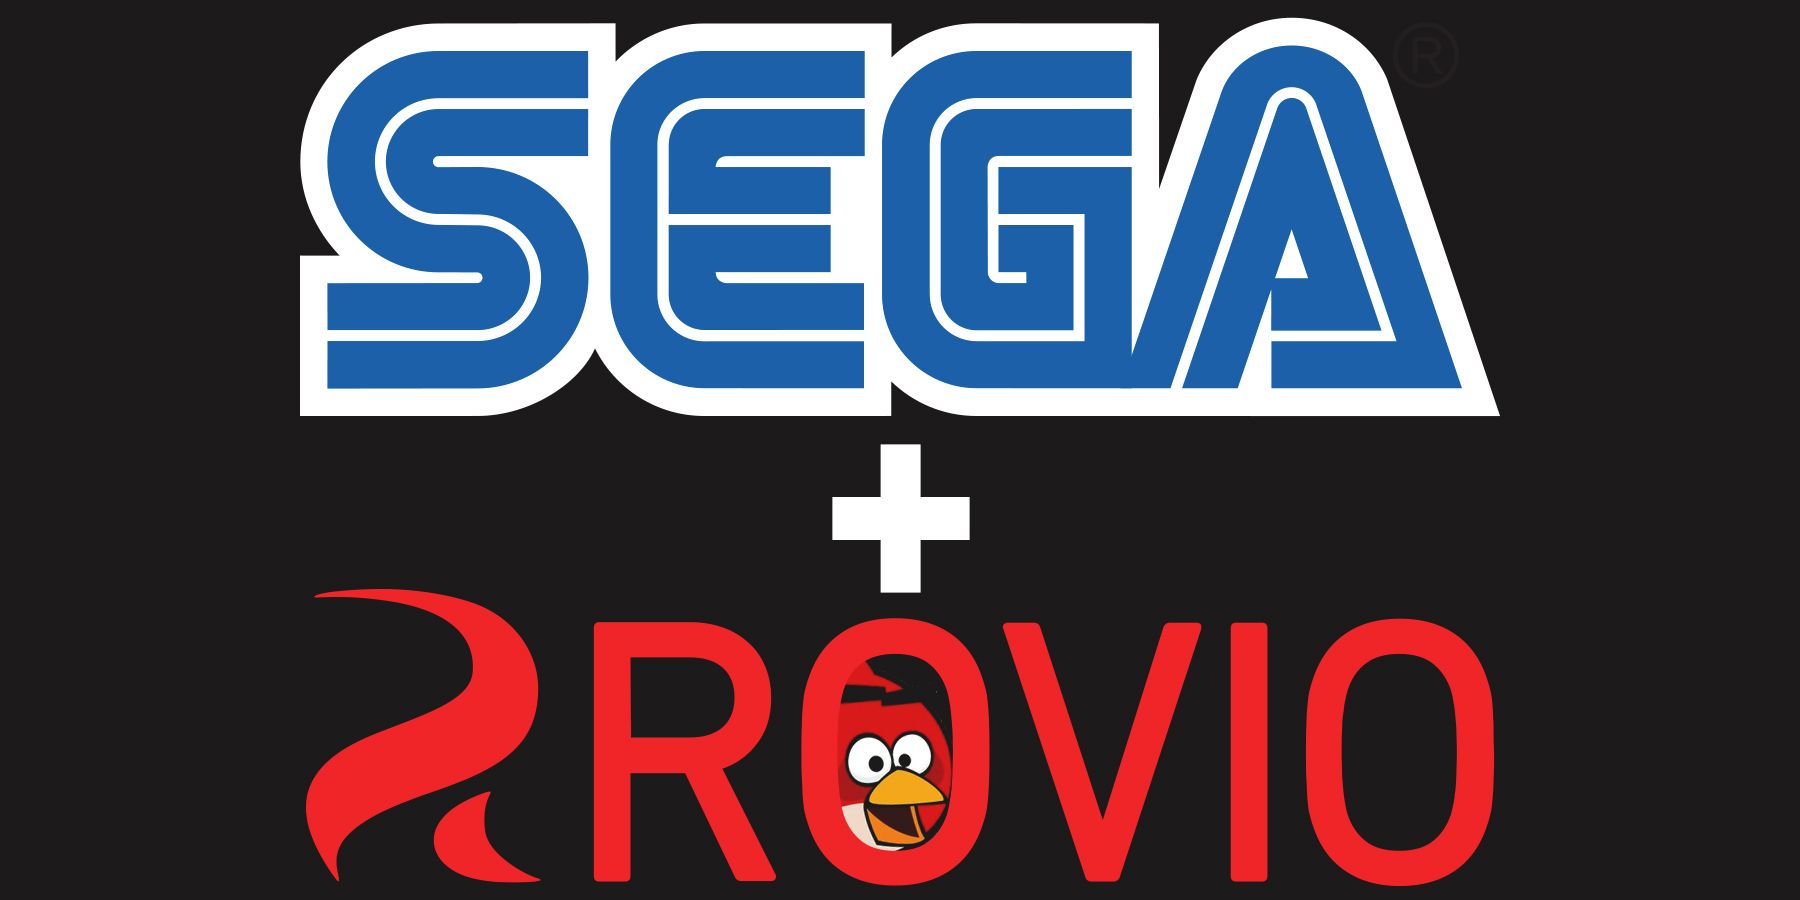 Sega plus Rovio logos with red Angry Bird